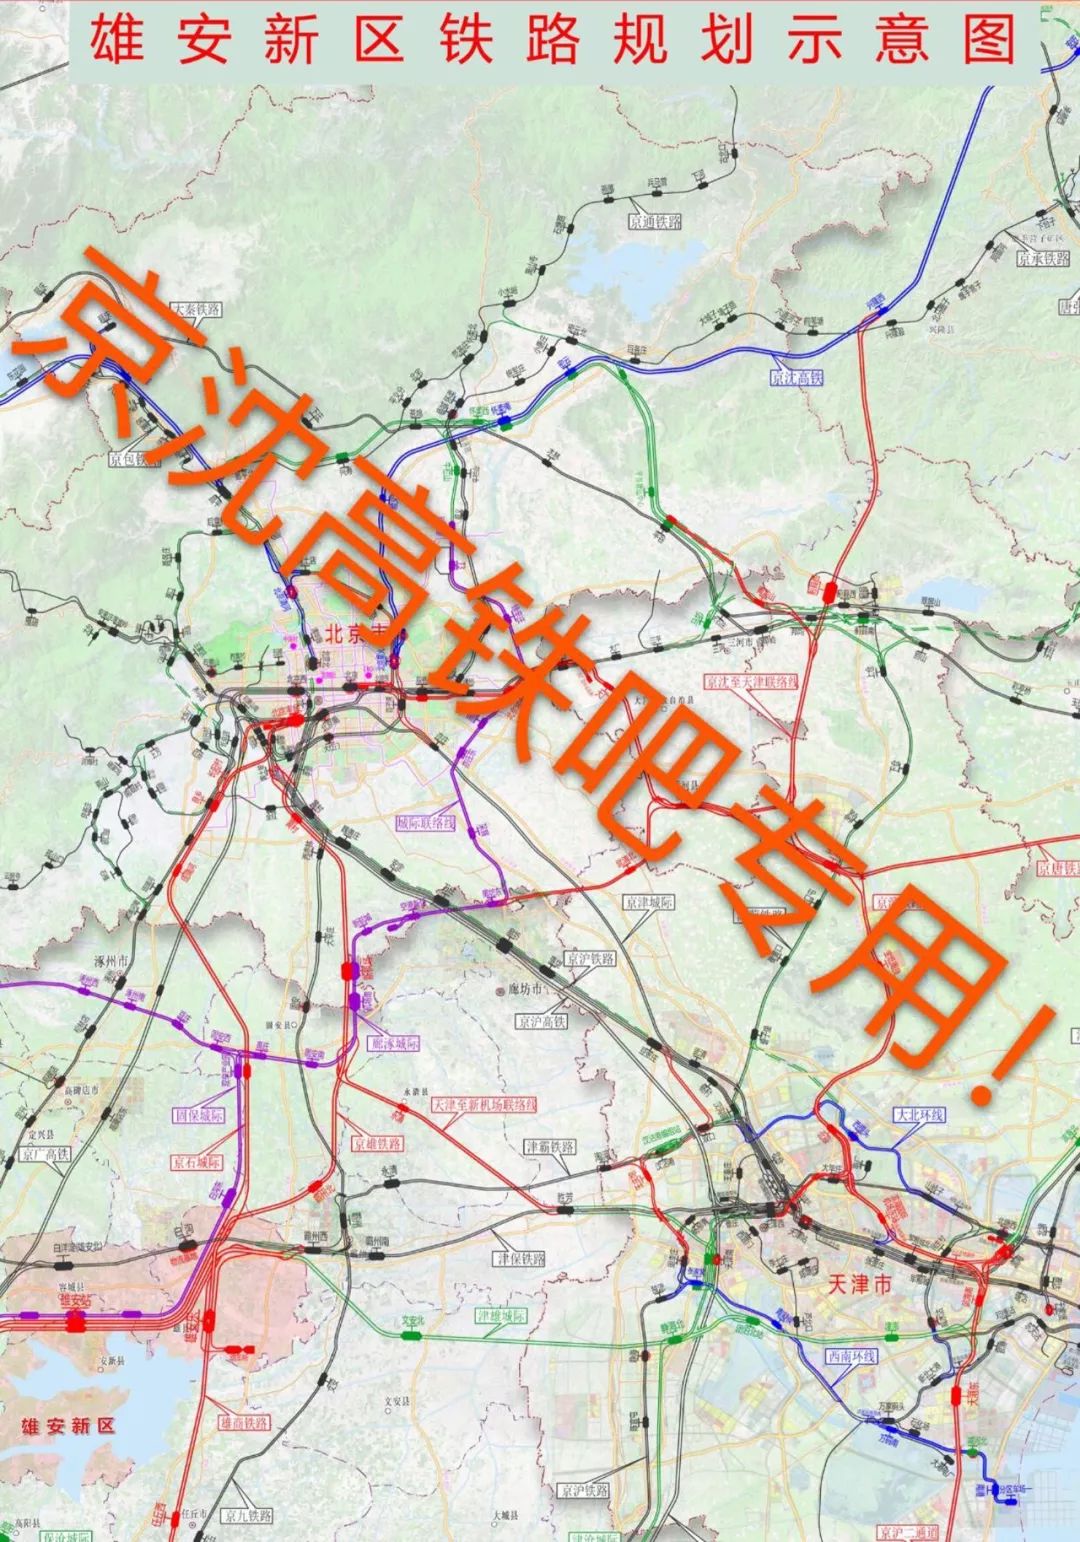 仅从这张规划图来看,环渤海高铁和京沪二线重叠部分大概沿津歧公路